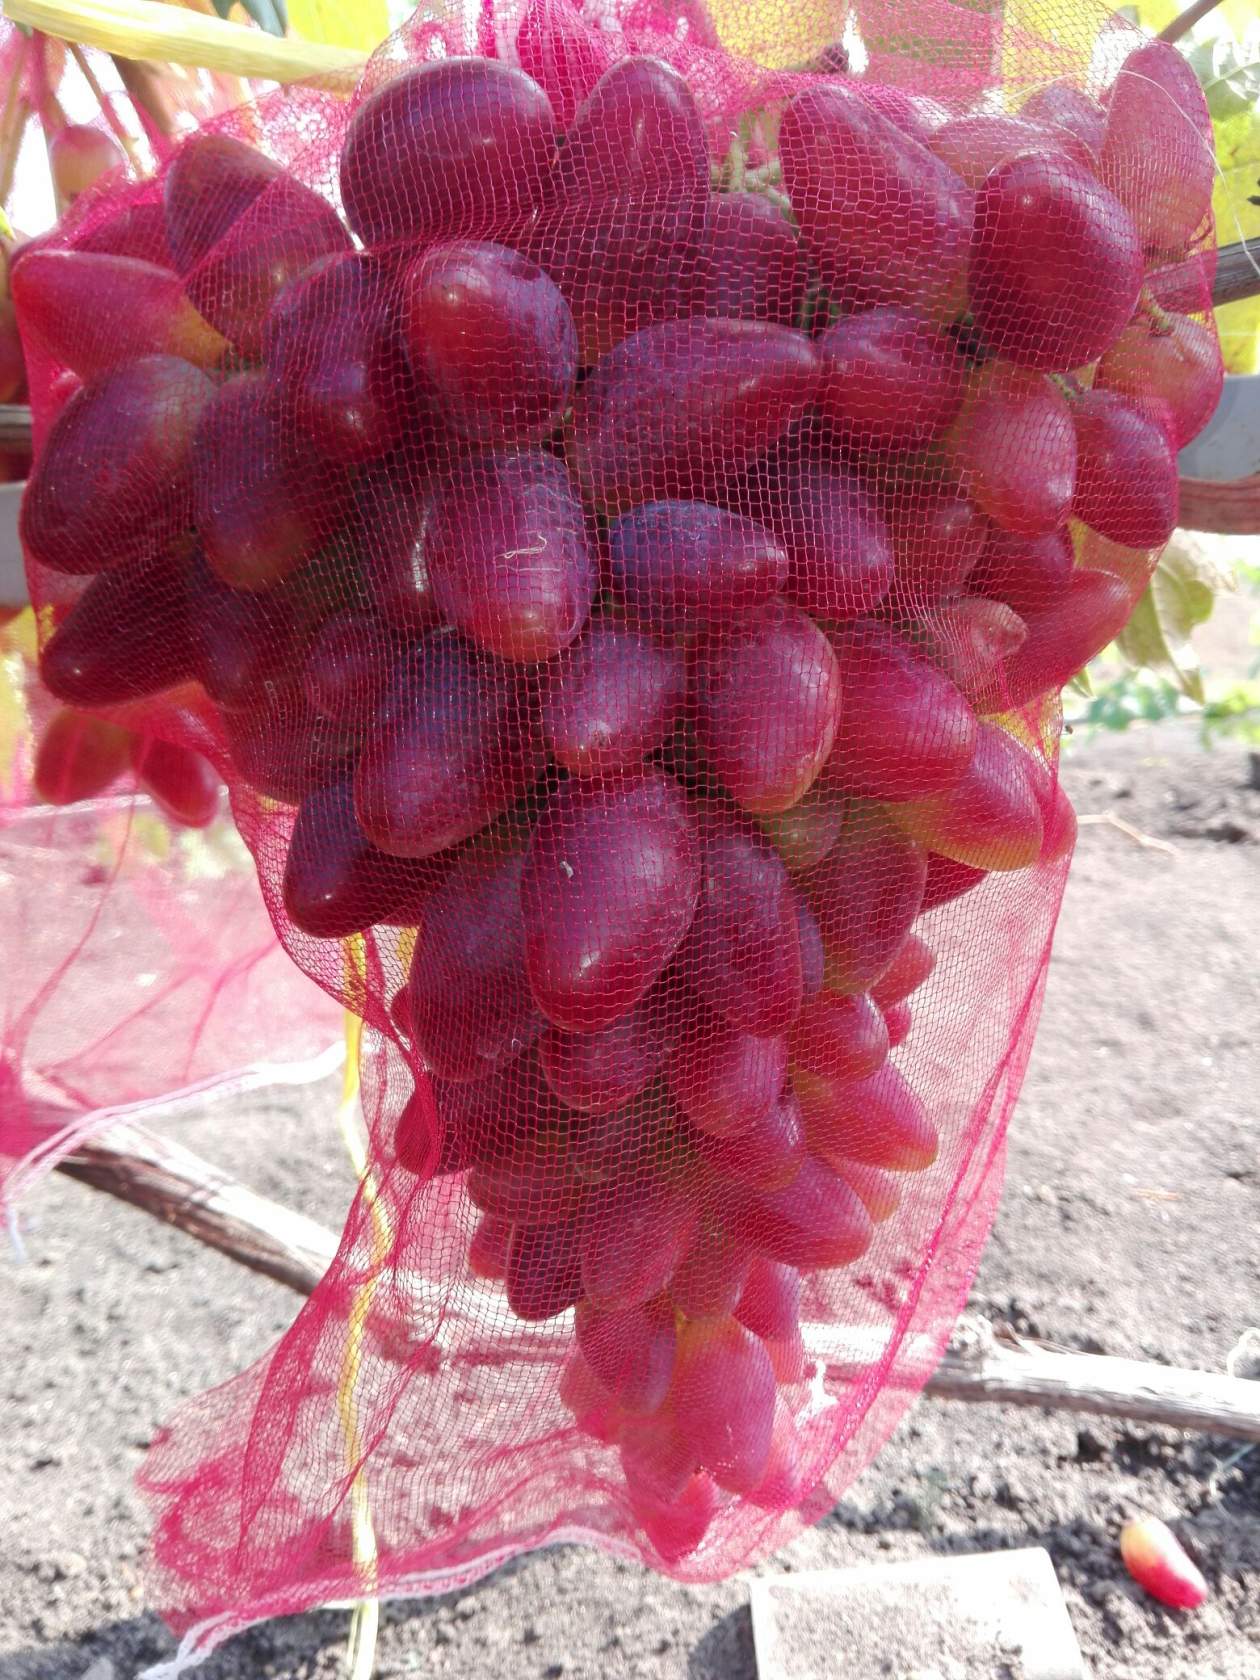 Виноград дубовский розовый отзывы